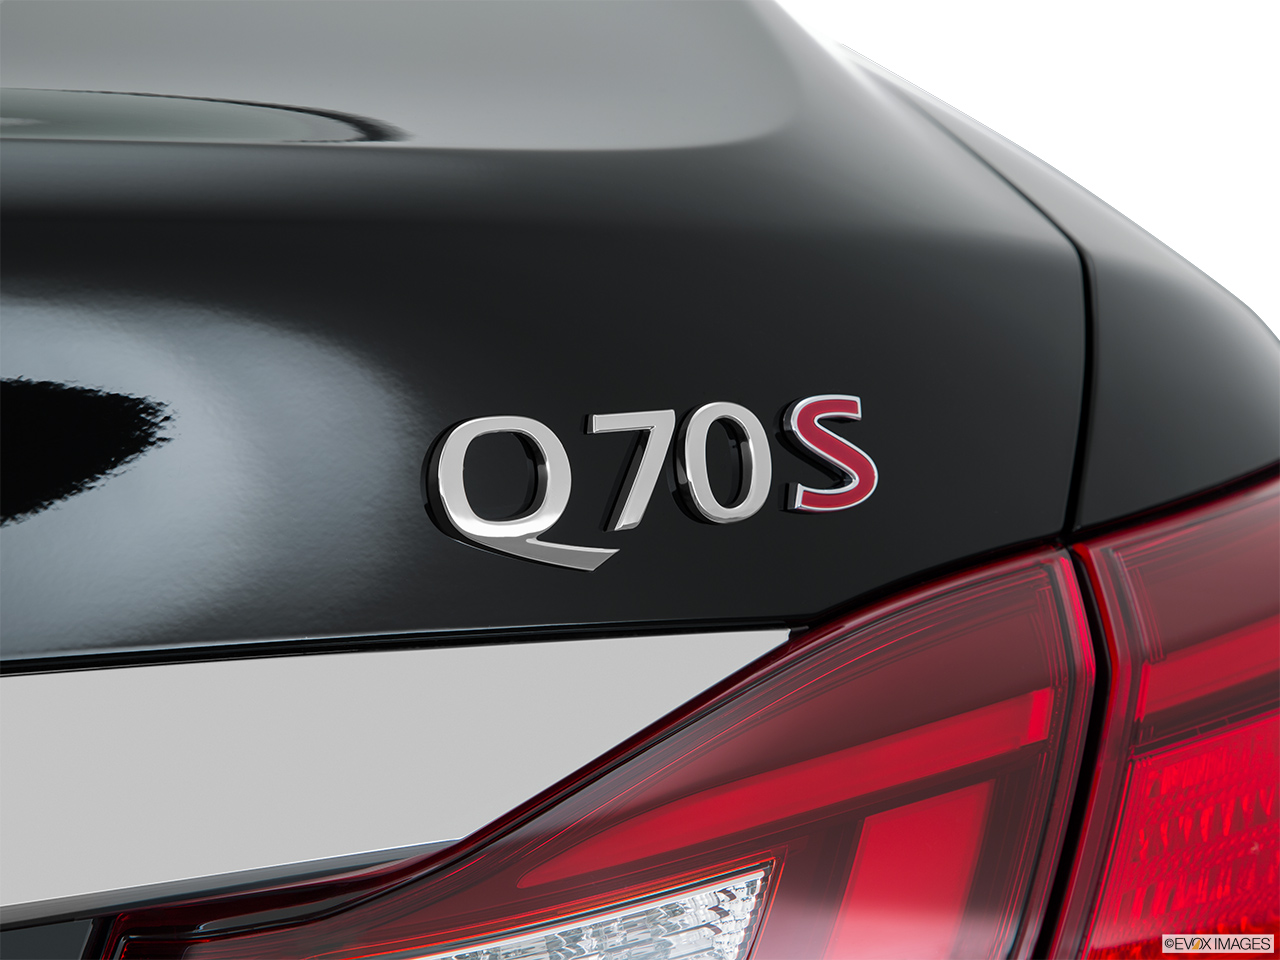 Infiniti Q70S badge